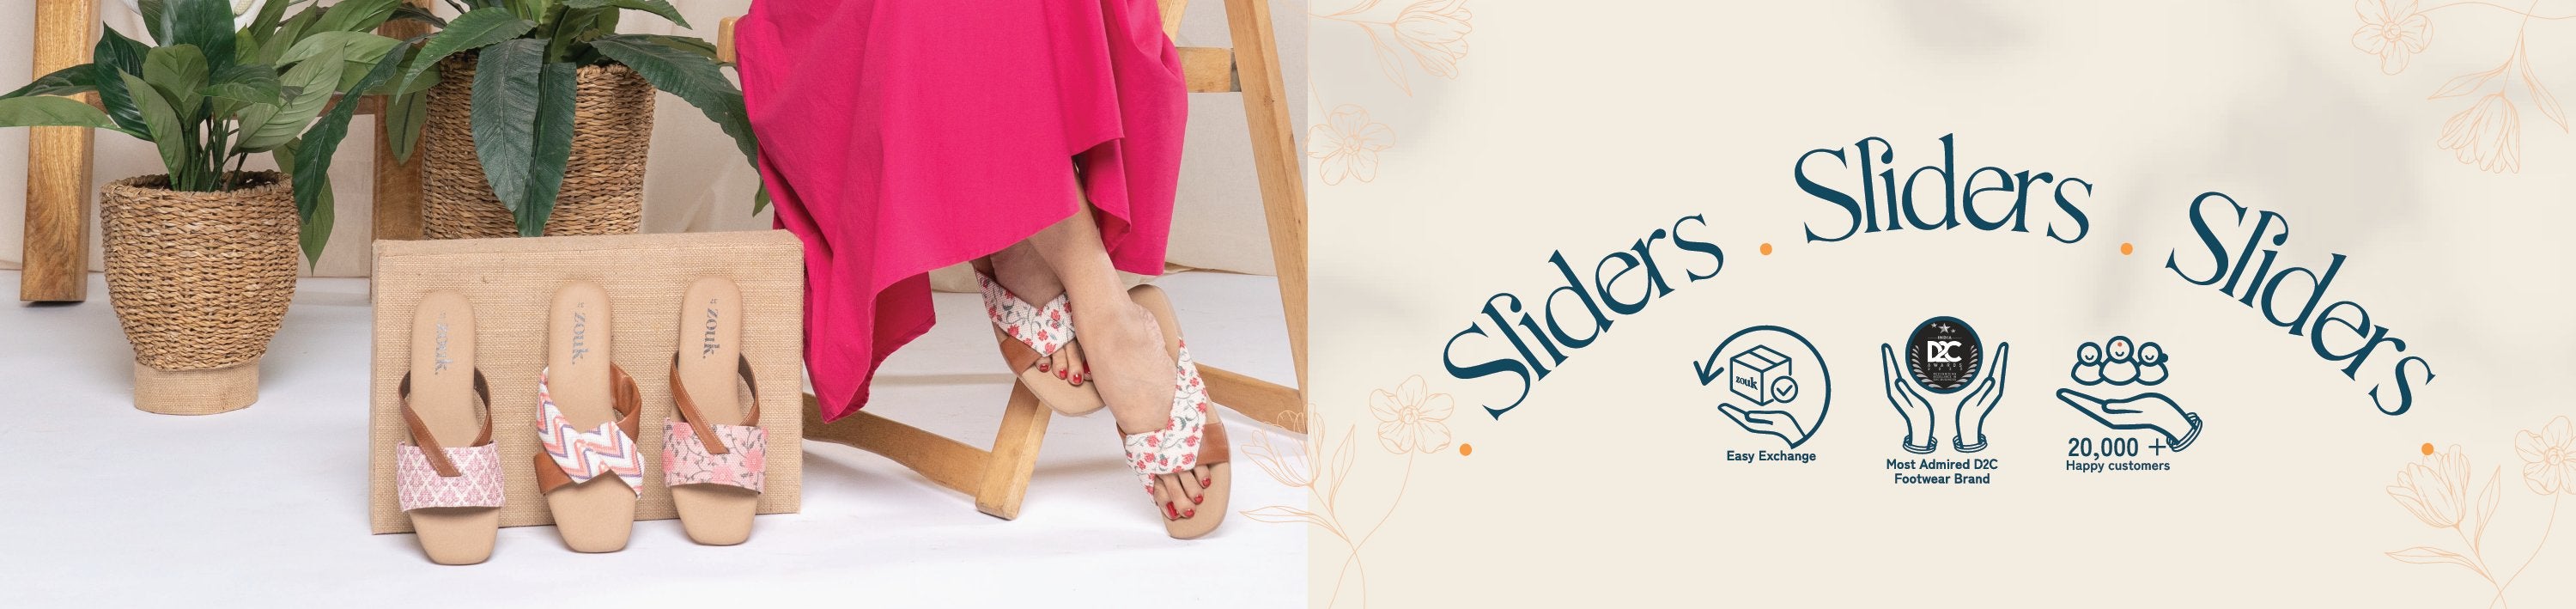 Sliders for Women: Buy Slipper Sliders, Slide Flip Flops for Women at great  price - Zouk